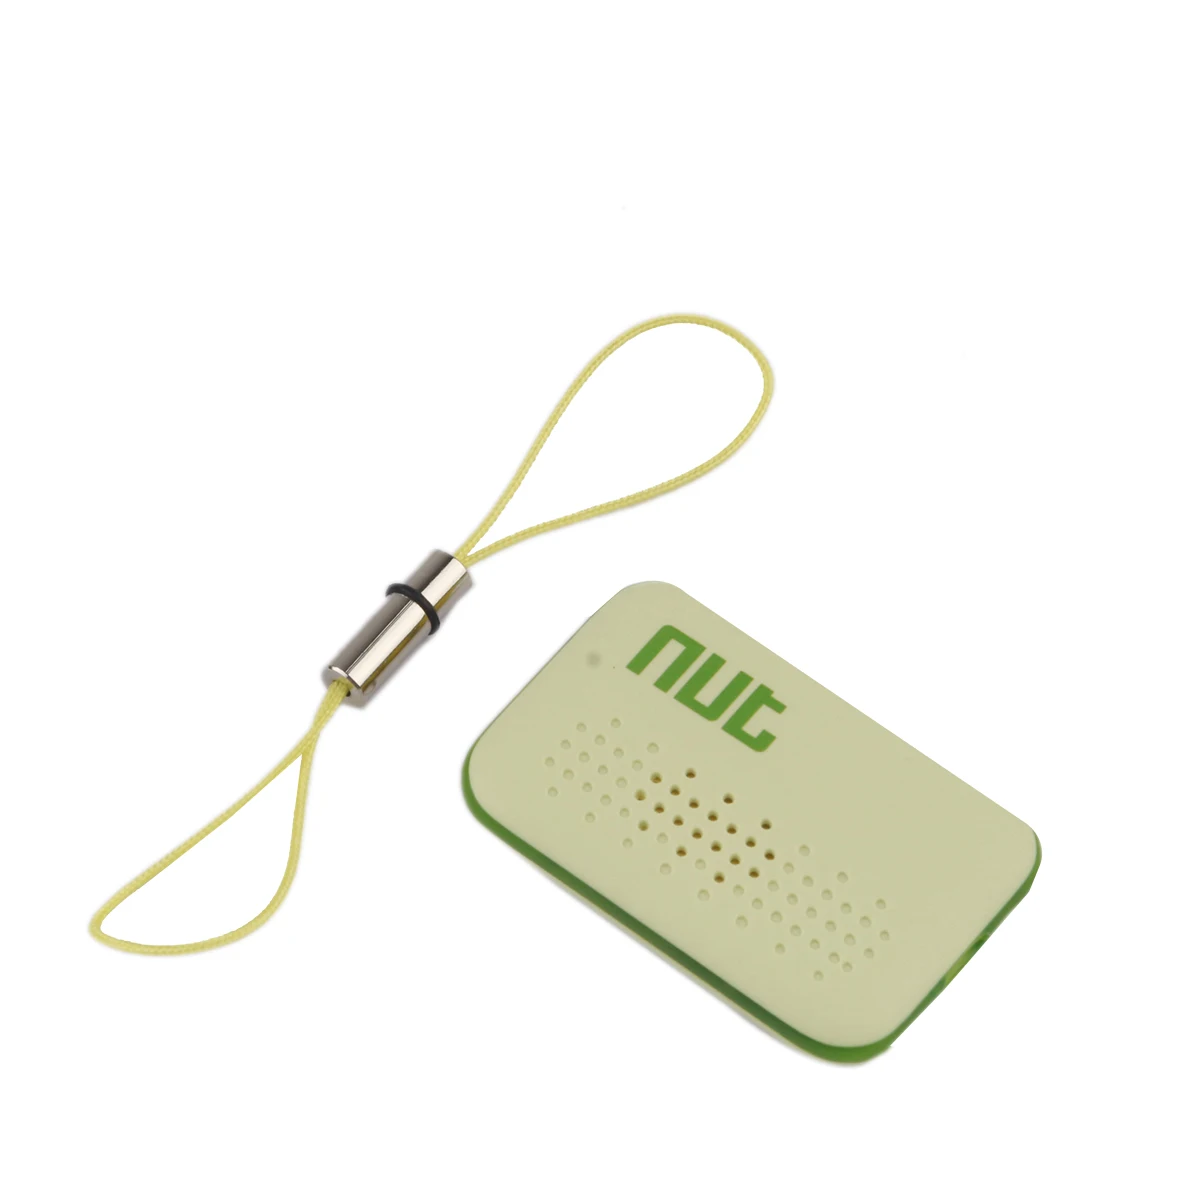 Мини-Поисковый брелок с гайкой, беспроводной Bluetooth трекер, отслеживание потери, напоминание, gps-сигнализация, локатор для детского ключа, кошелек